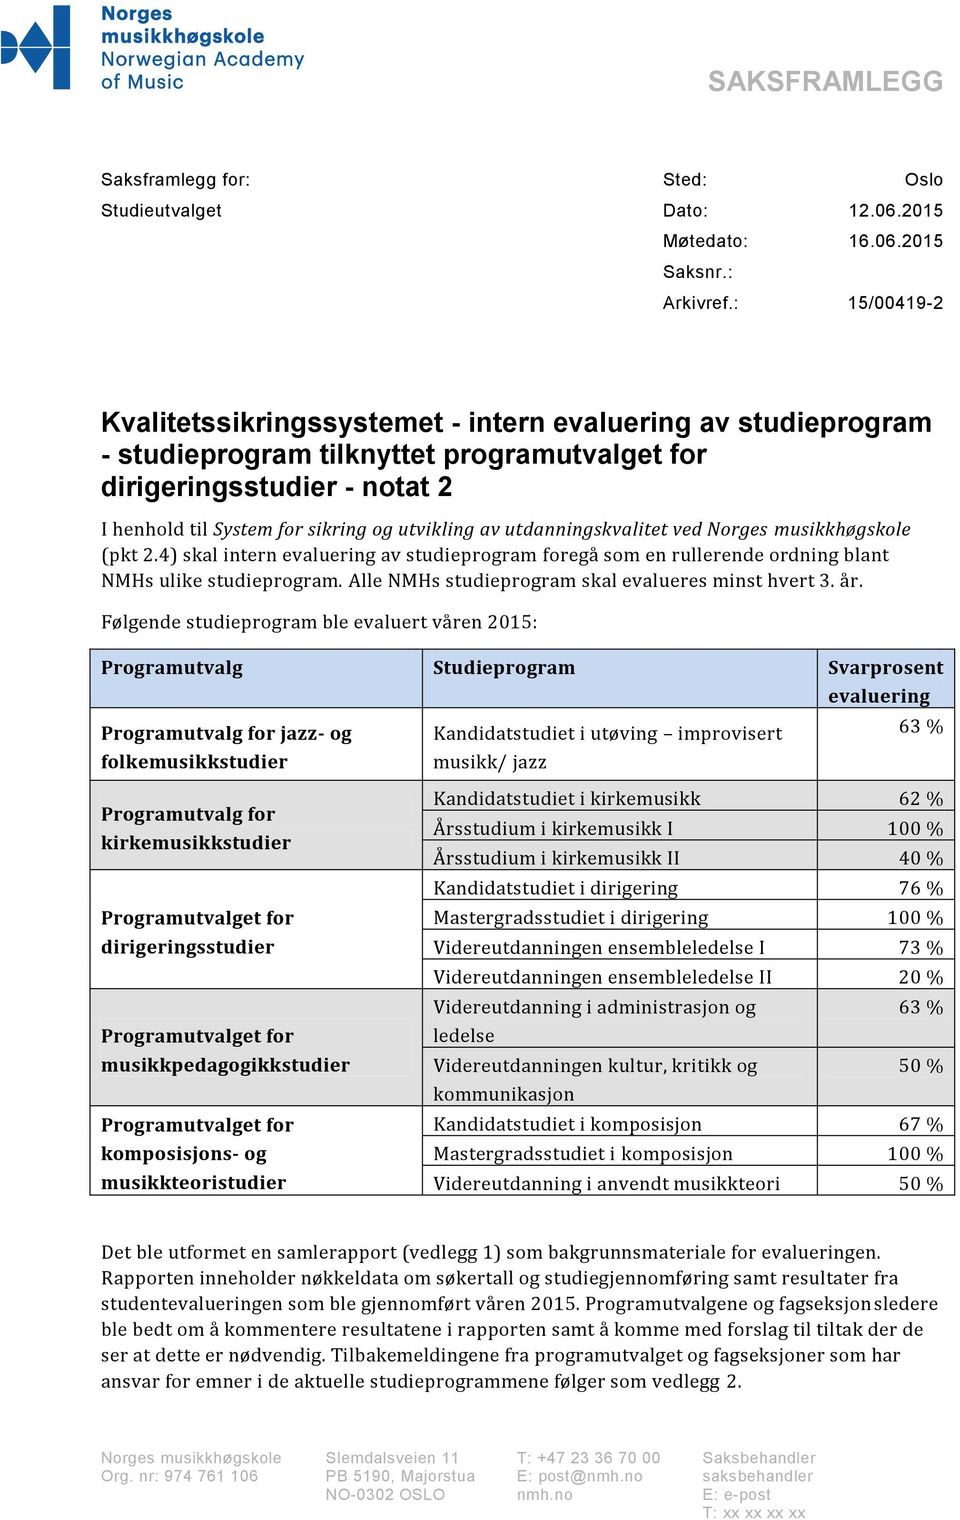 av utdanningskvalitet ved Norges musikkhøgskole (pkt 2.4) skal intern evaluering av studieprogram foregå som en rullerende ordning blant NMHs ulike studieprogram.